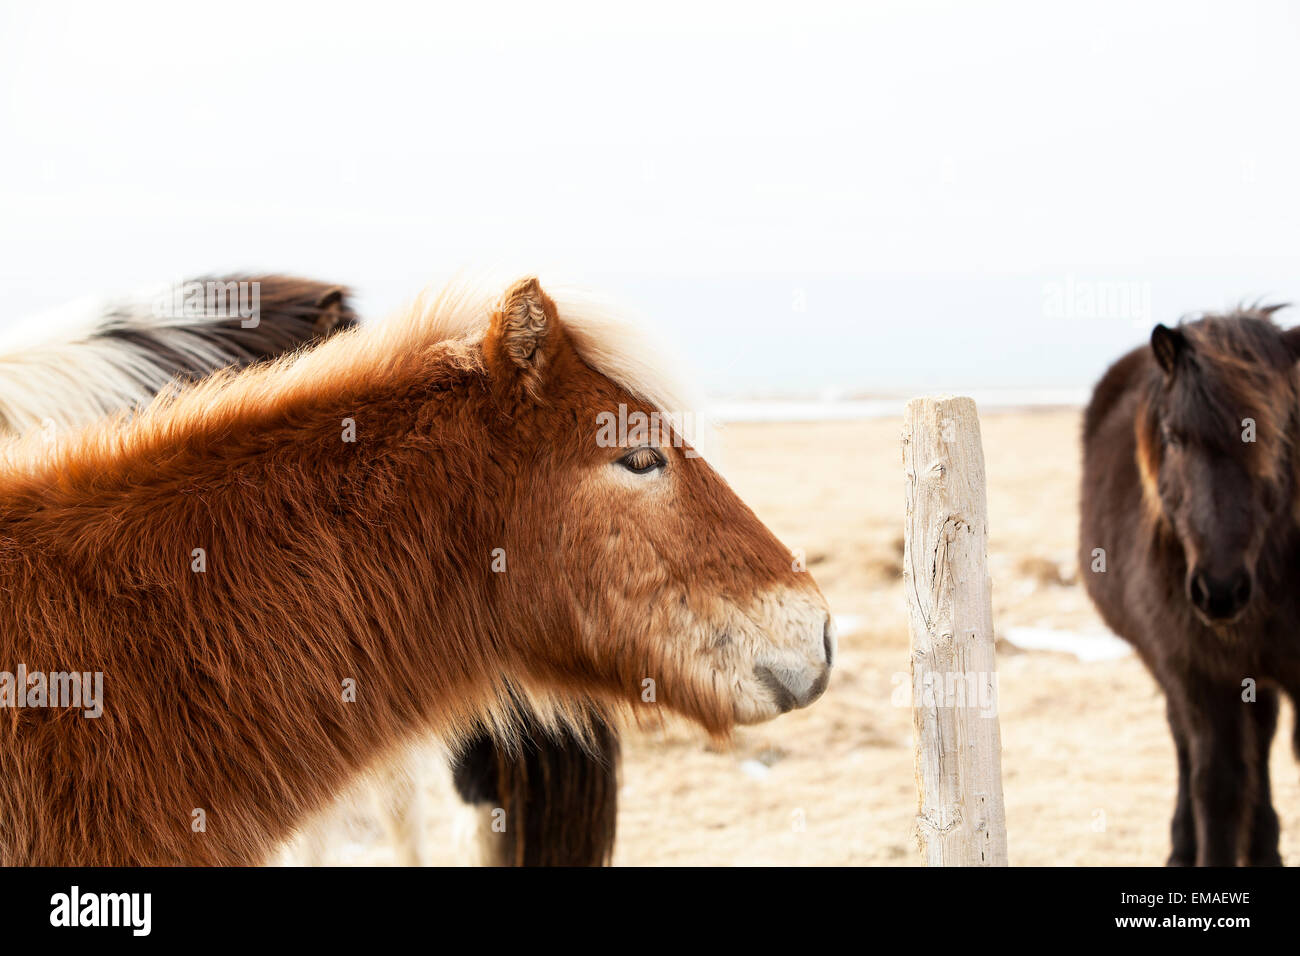 Retrato de un caballo islandés con melena rubia en un rebaño Foto de stock